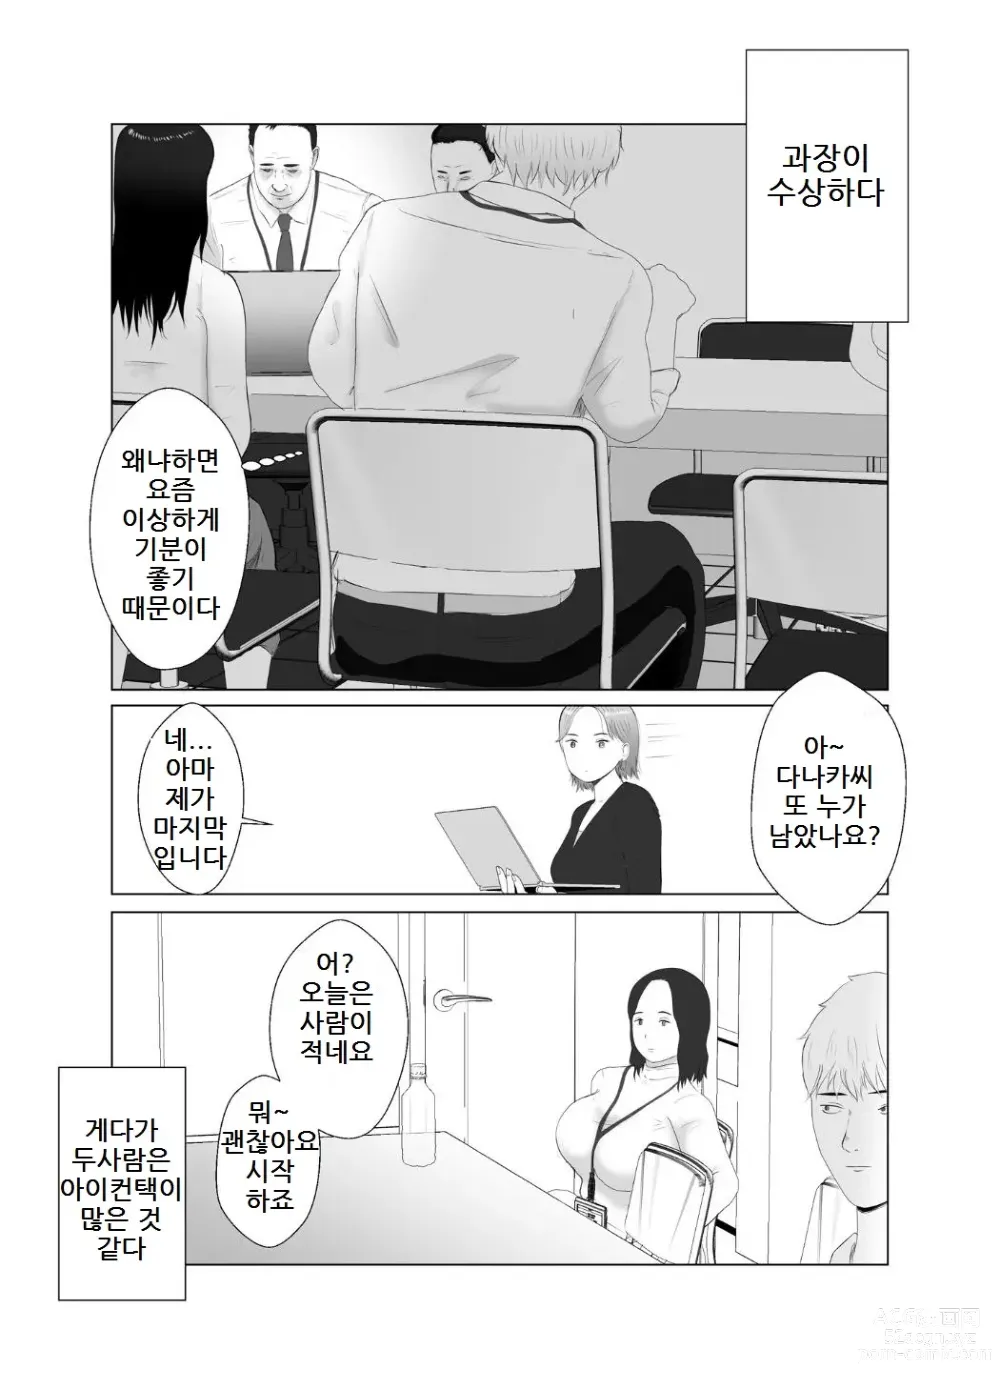 Page 68 of doujinshi 네토라세 검토해주세요 3, ~배덕의 늪에 어서와요~